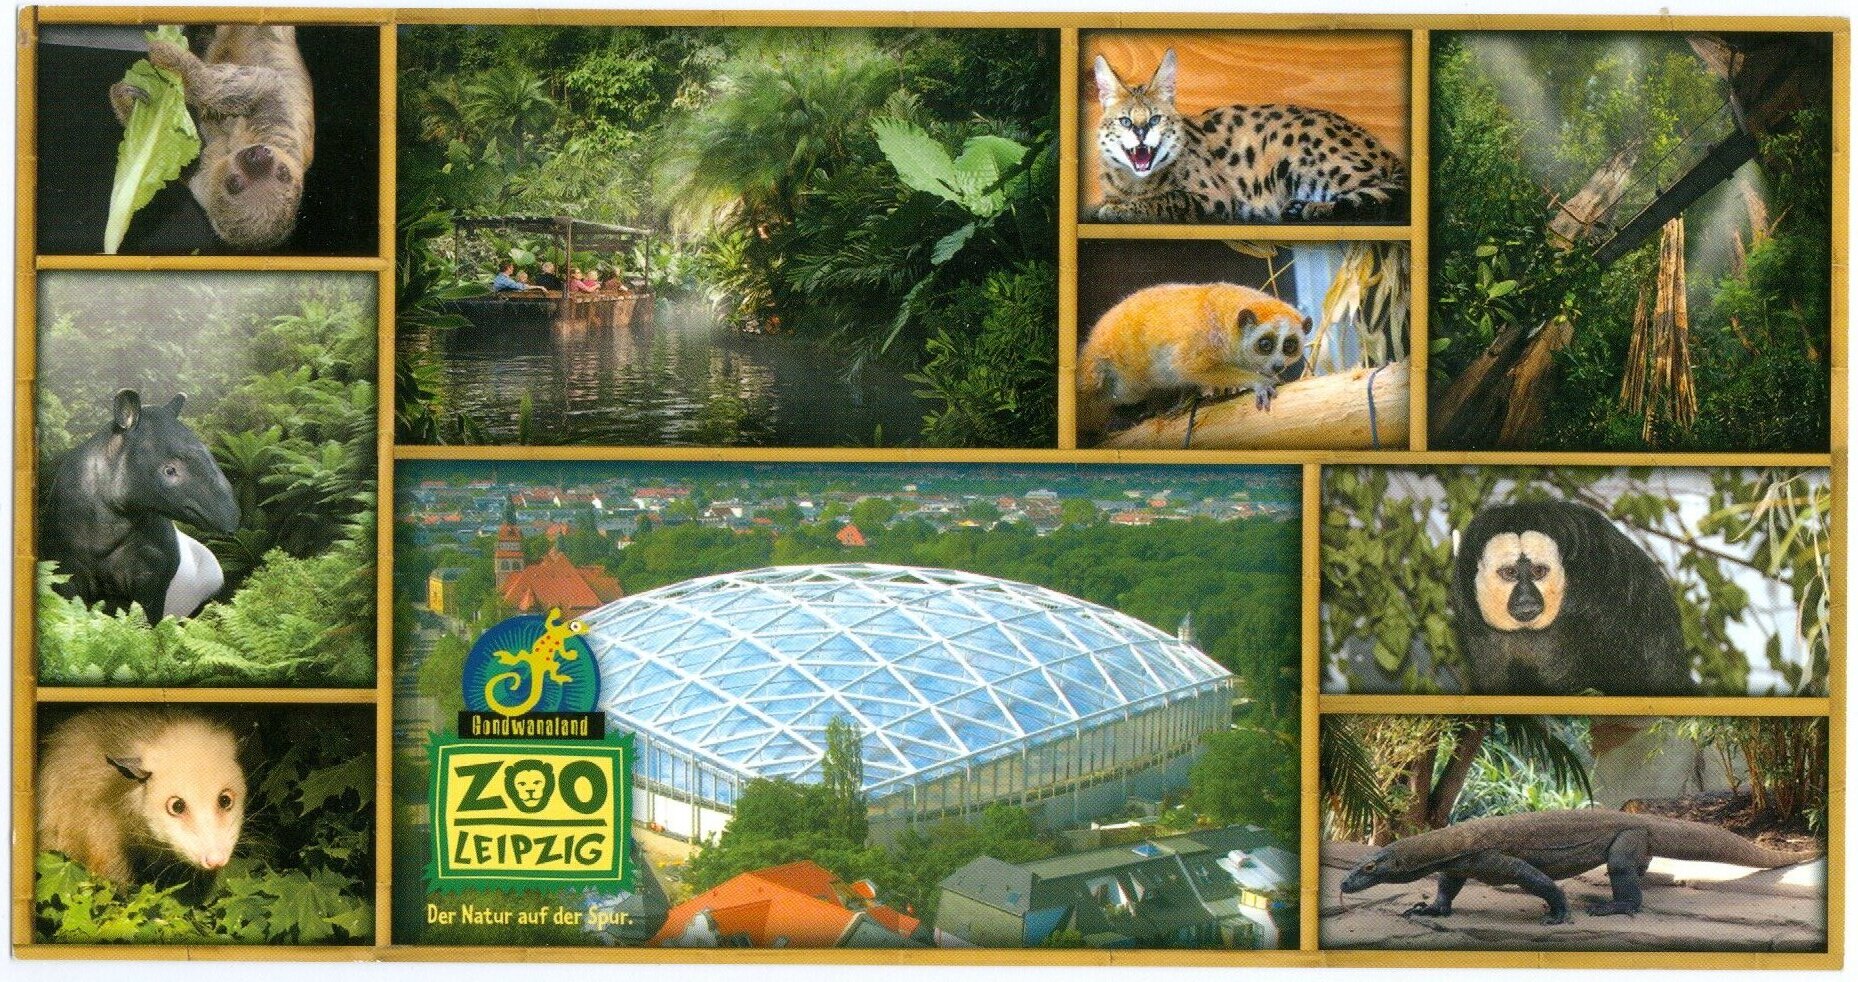 Ansichtskarte Zoo Leipzig (SMILE & FUN Verlag und Ideenbörse E.K. CC0)